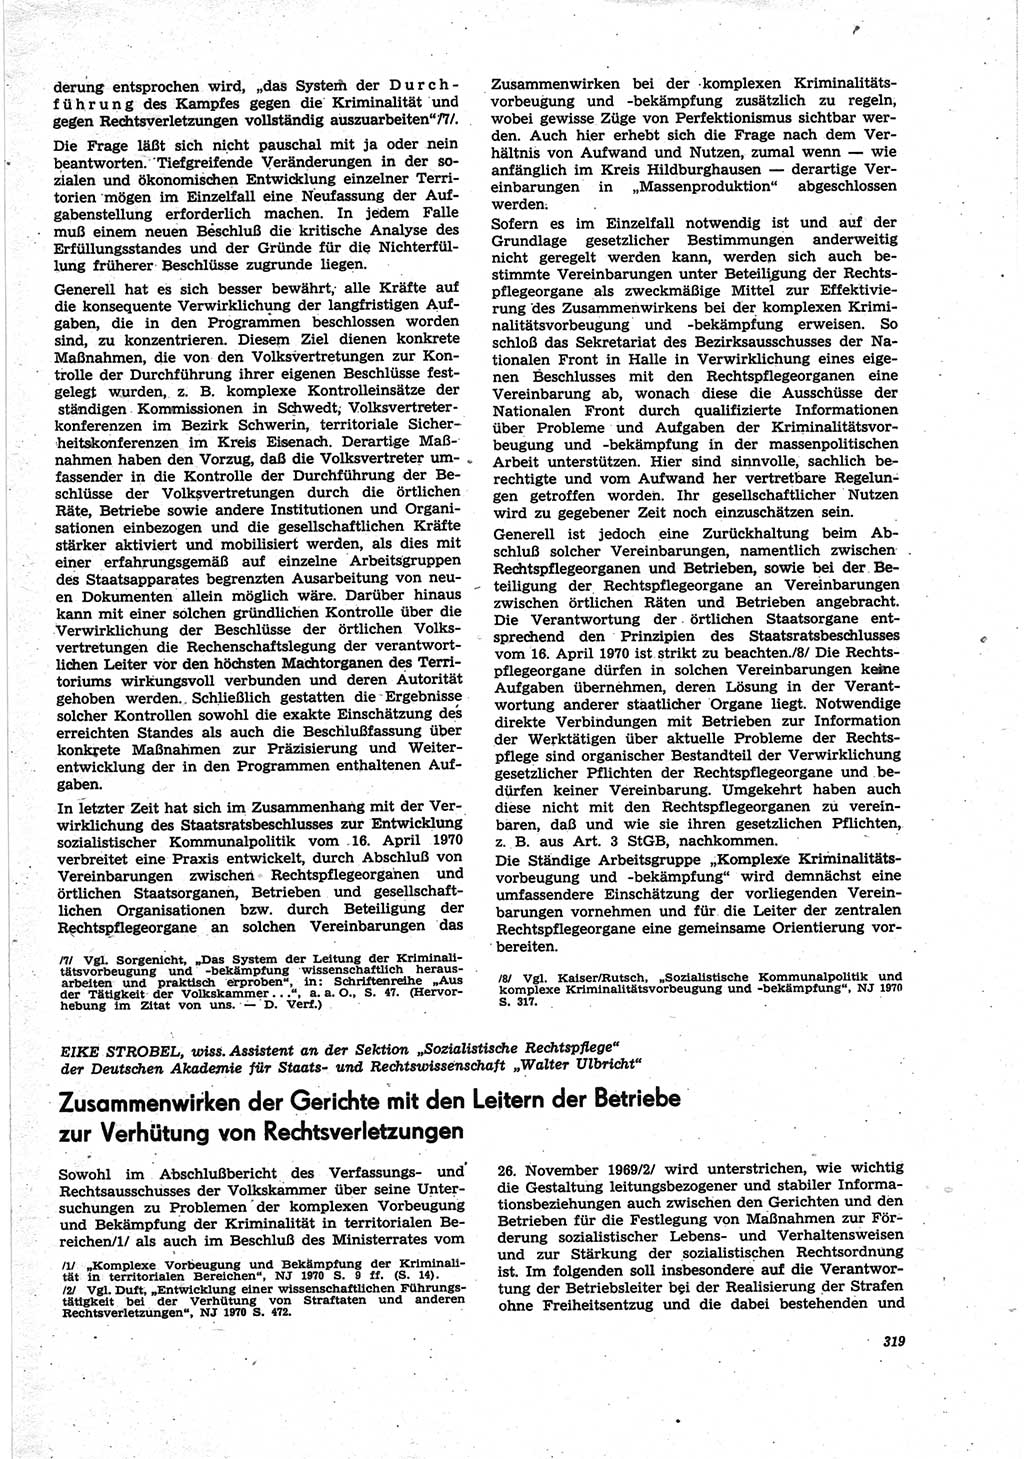 Neue Justiz (NJ), Zeitschrift für Recht und Rechtswissenschaft [Deutsche Demokratische Republik (DDR)], 25. Jahrgang 1971, Seite 319 (NJ DDR 1971, S. 319)